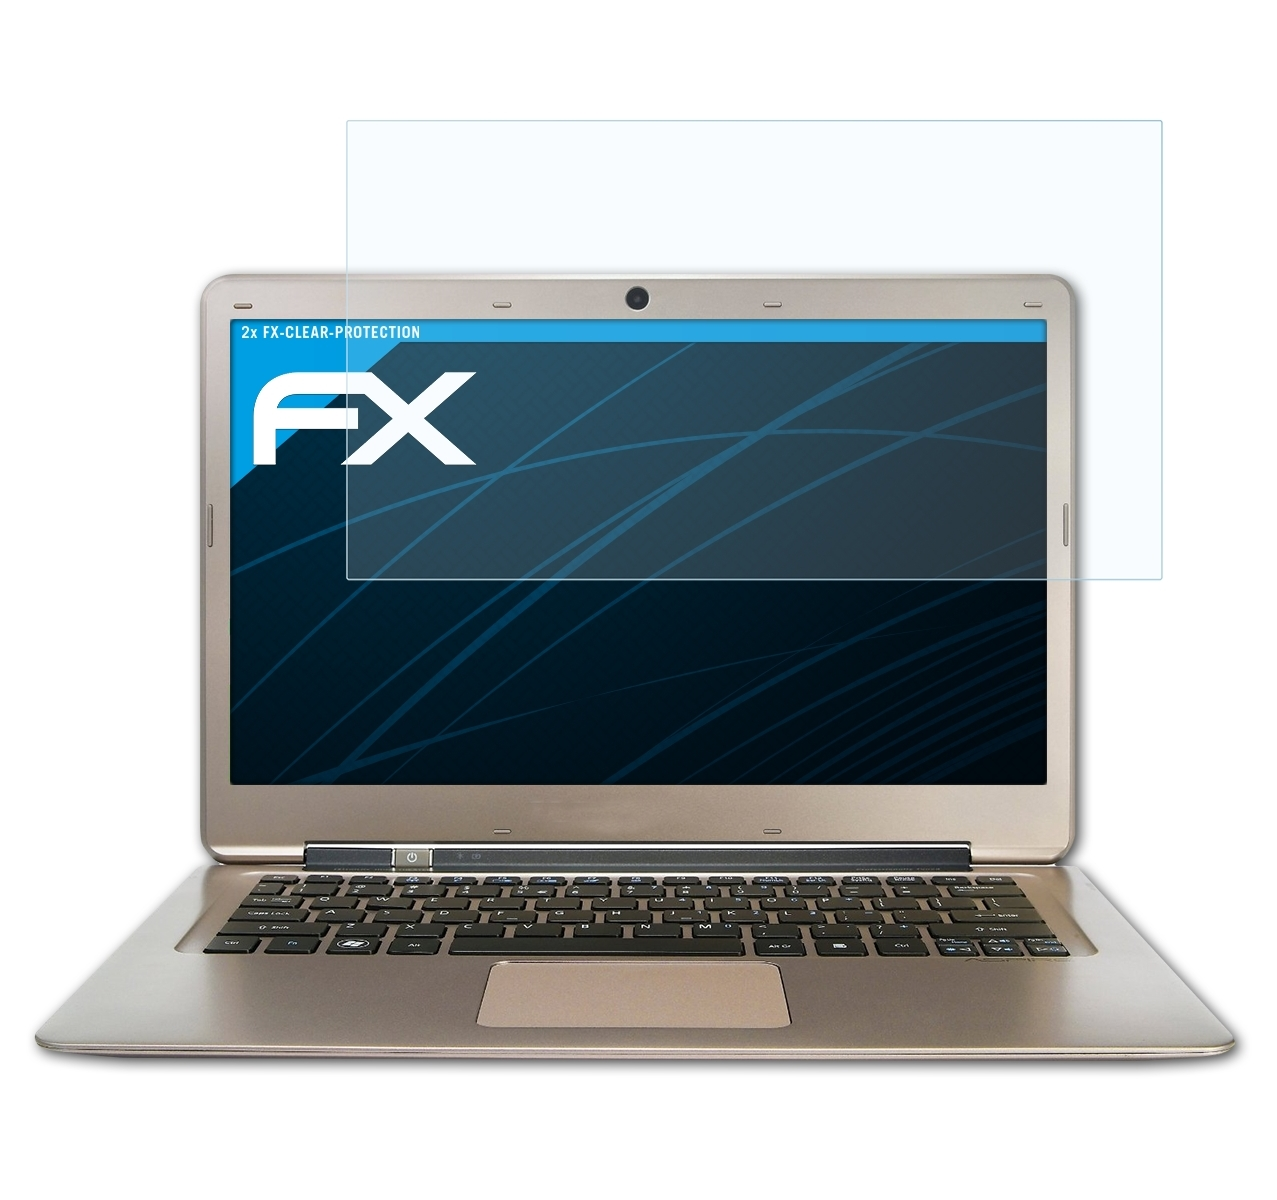 S3-391) Displayschutz(für ATFOLIX FX-Clear Acer 2x Aspire